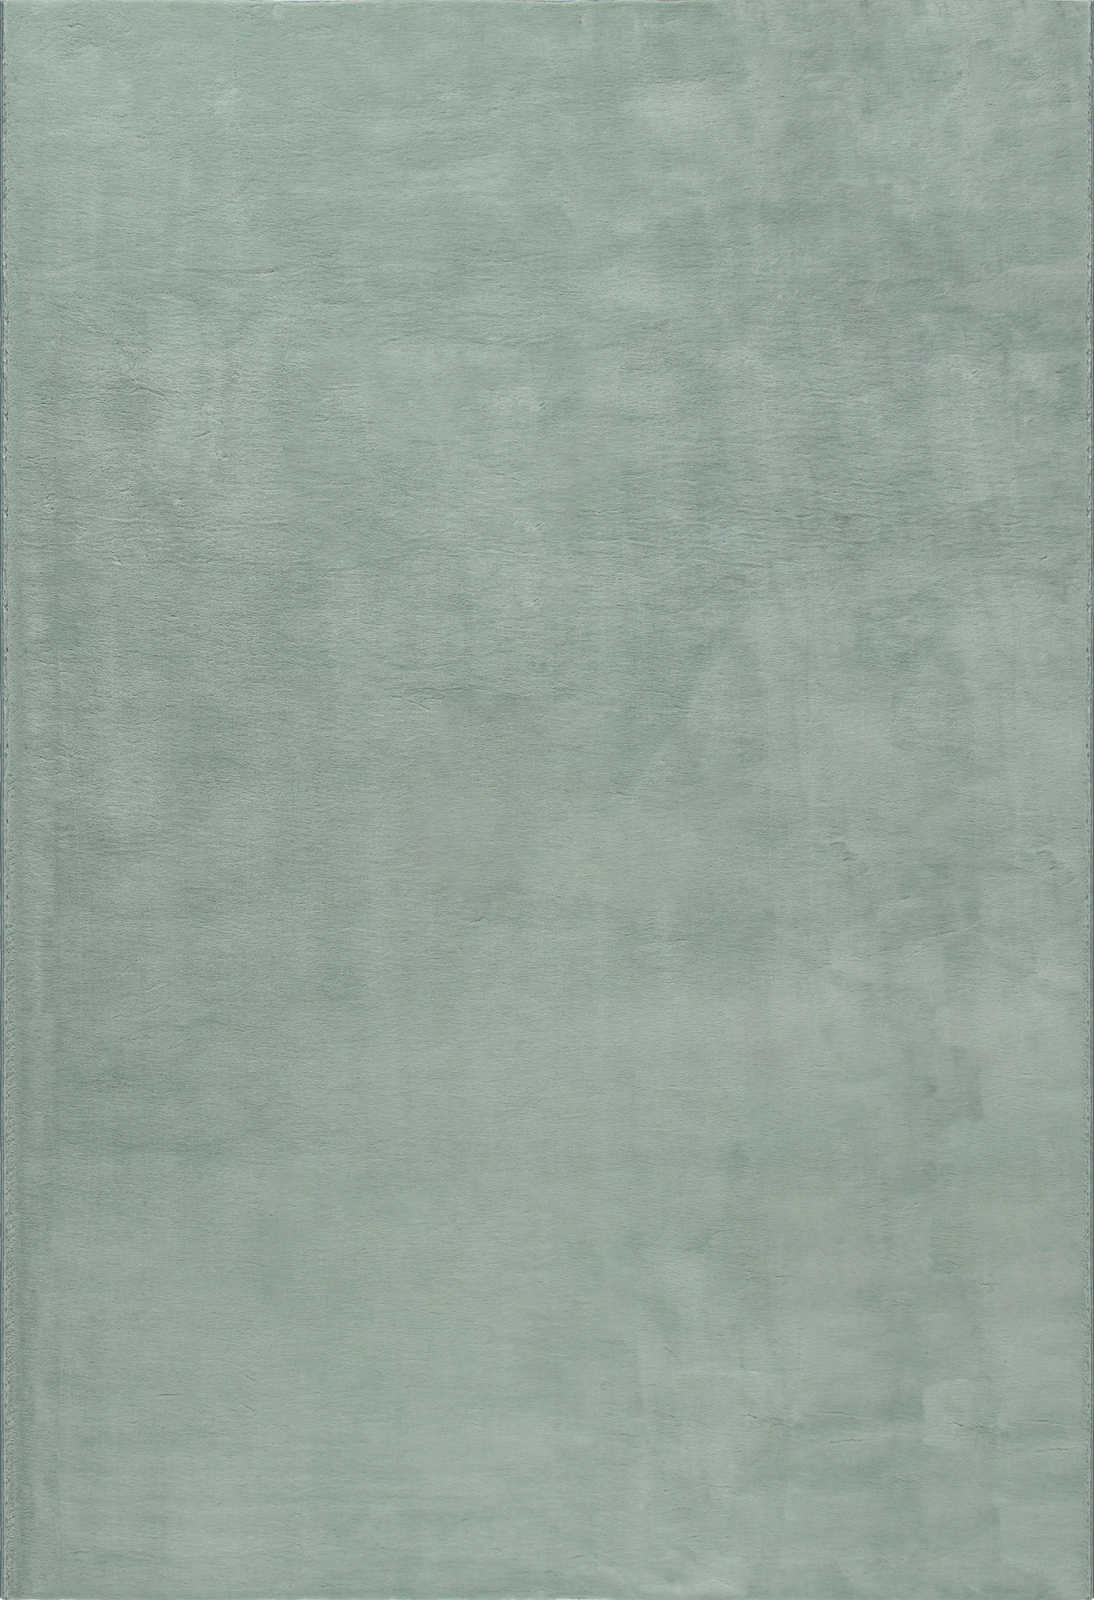             Zacht hoogpolig tapijt in zachtgroen - 170 x 120 cm
        